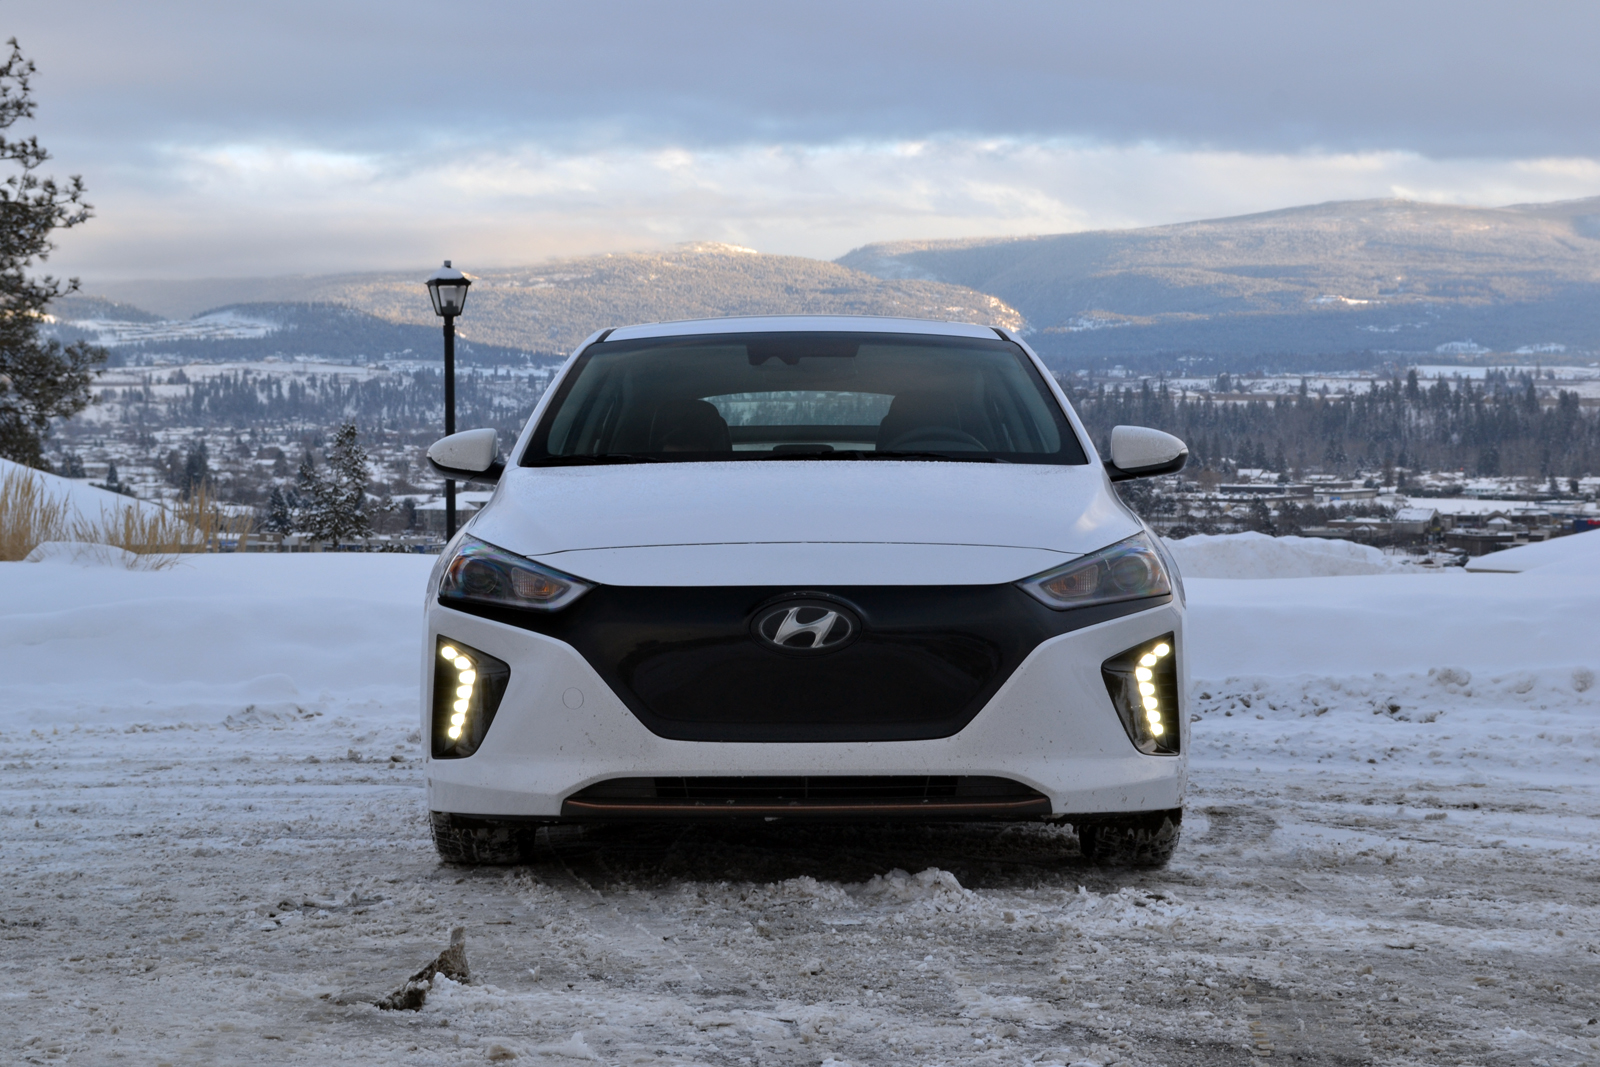 2017 Hyundai Ioniq Electric Review - AutoGuide.com